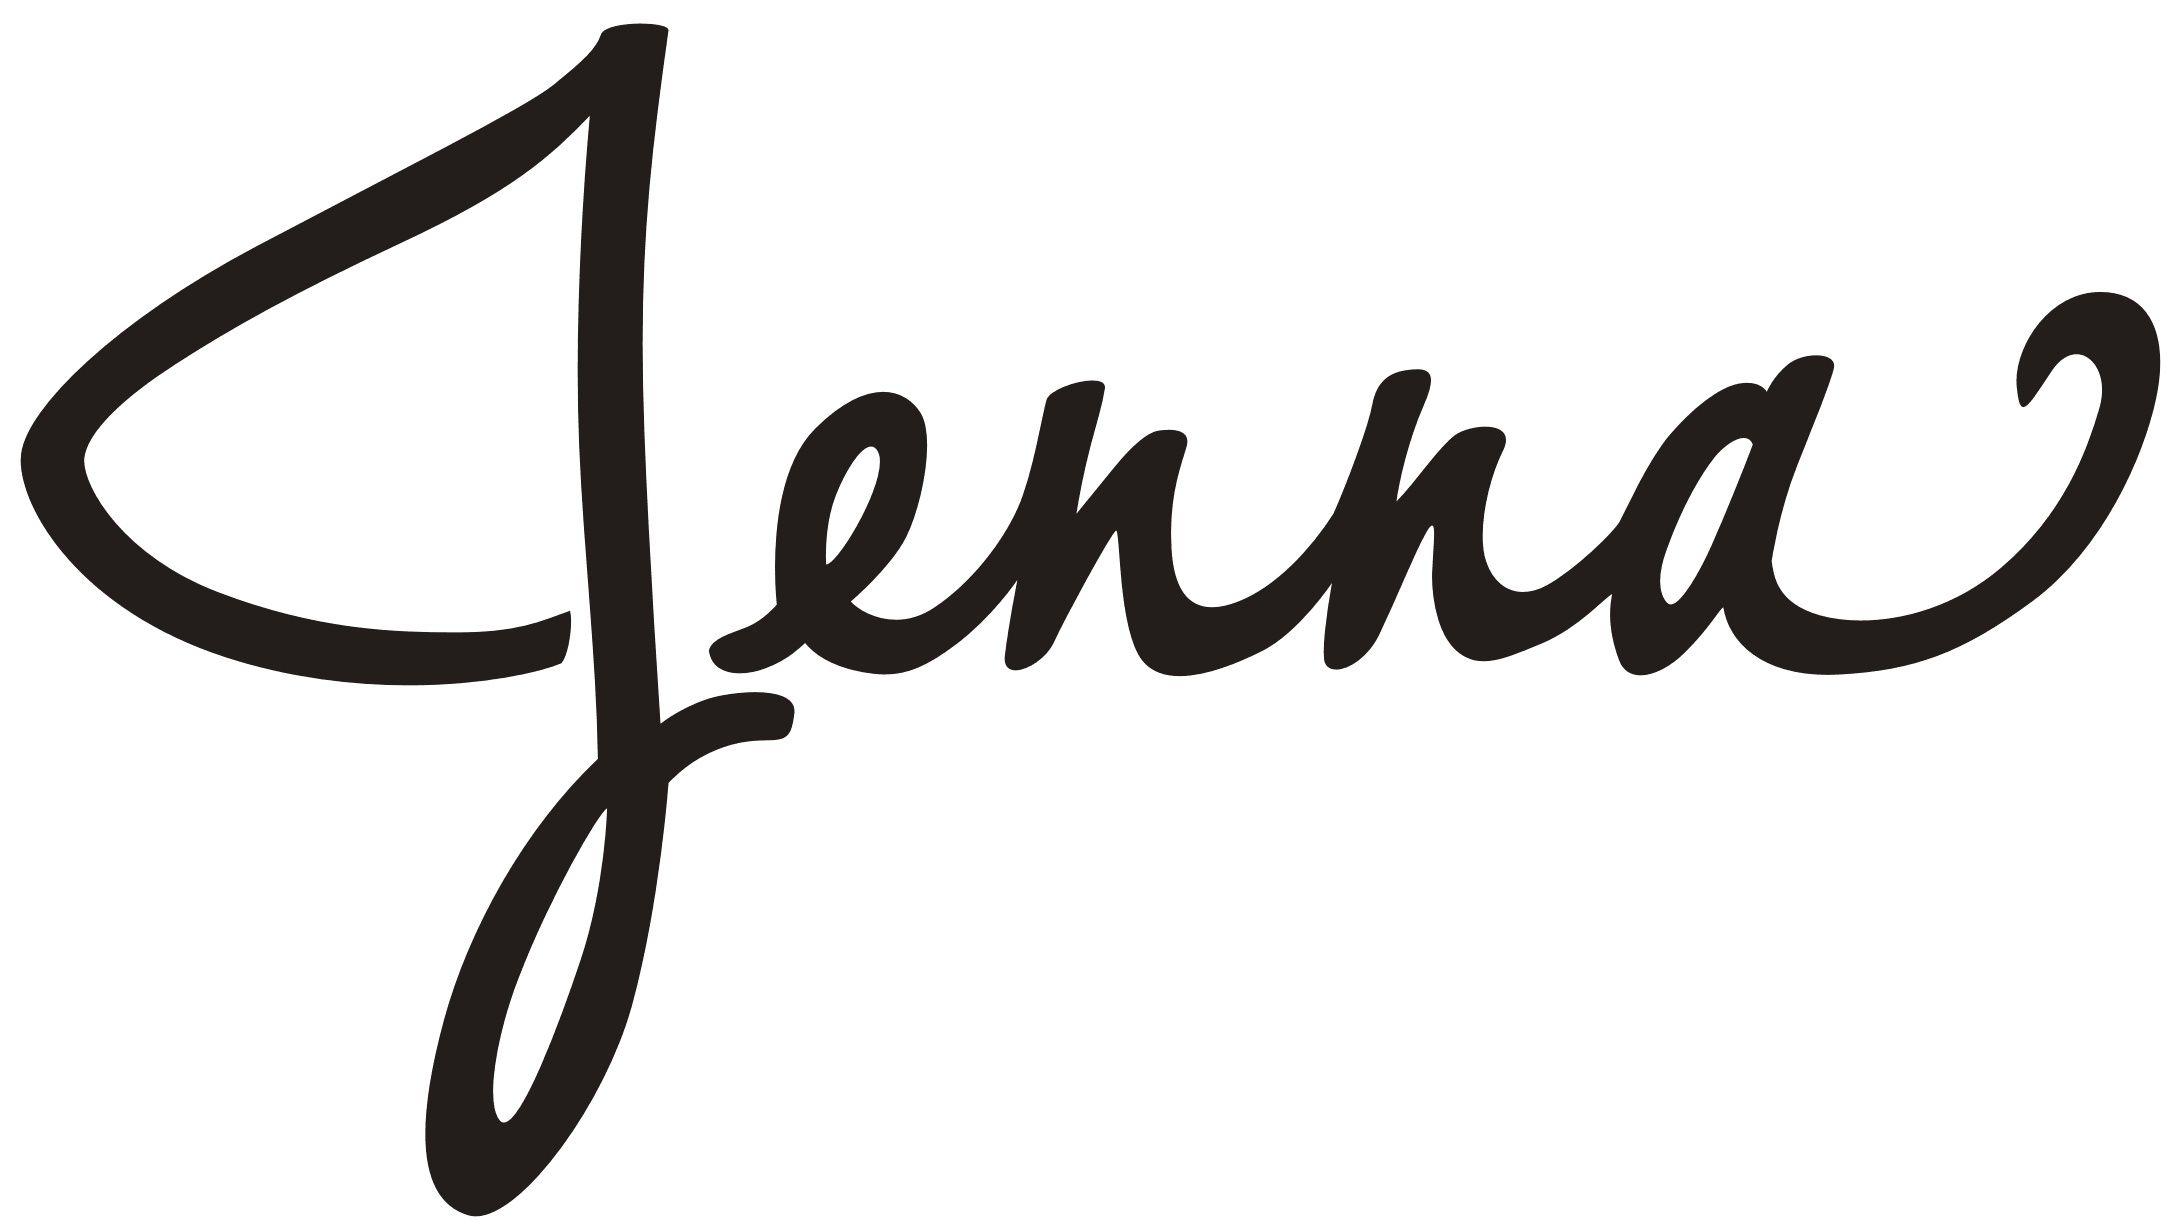 Jenna Logo - Logo Design, Log Cabin Inn by Elliott Design